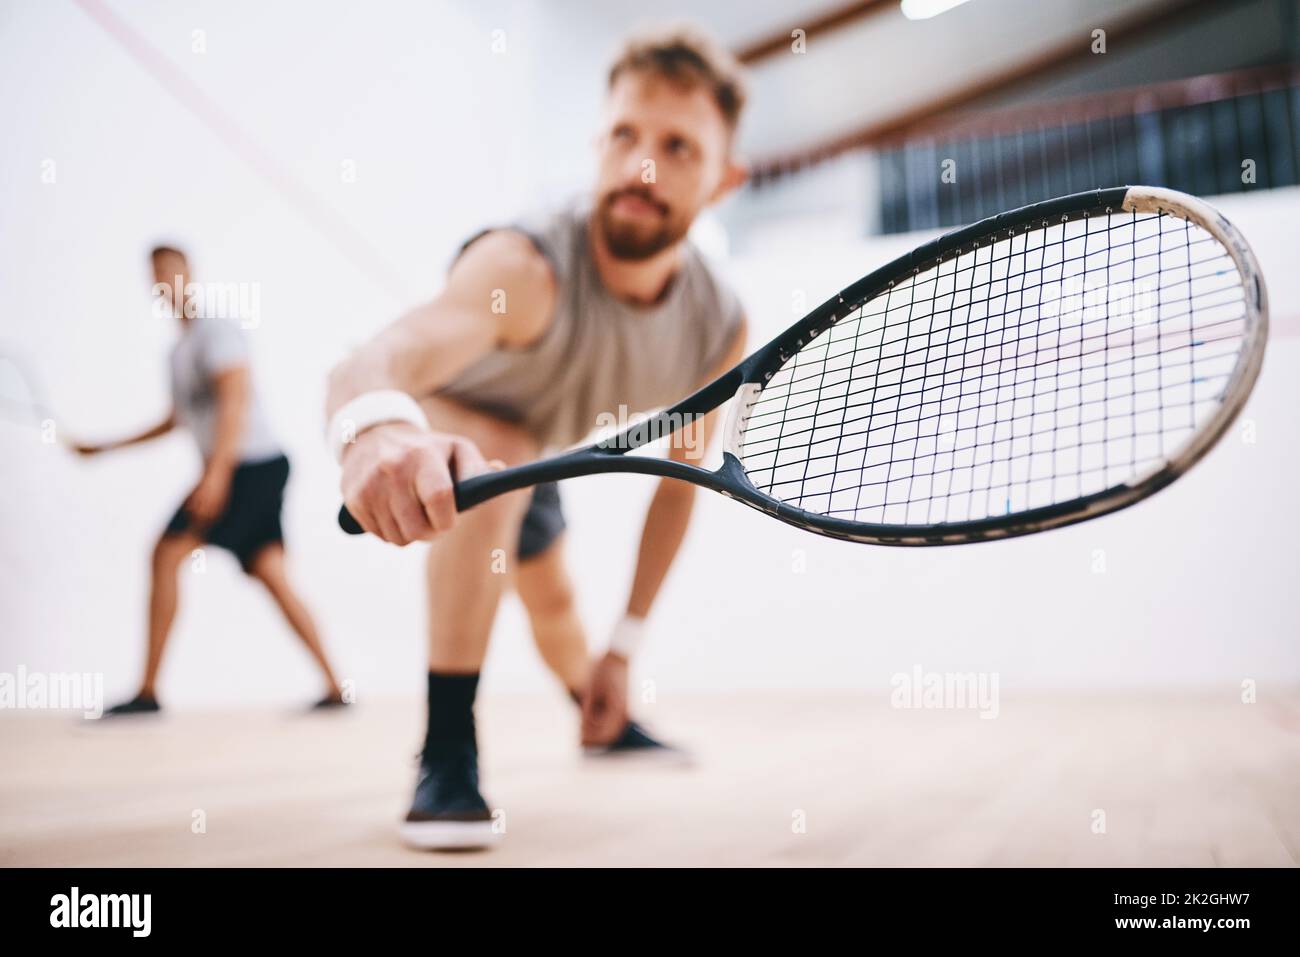 ne retirez pas les yeux du ballon pendant une seconde. Prise de vue de deux jeunes hommes jouant à une partie de squash. Banque D'Images